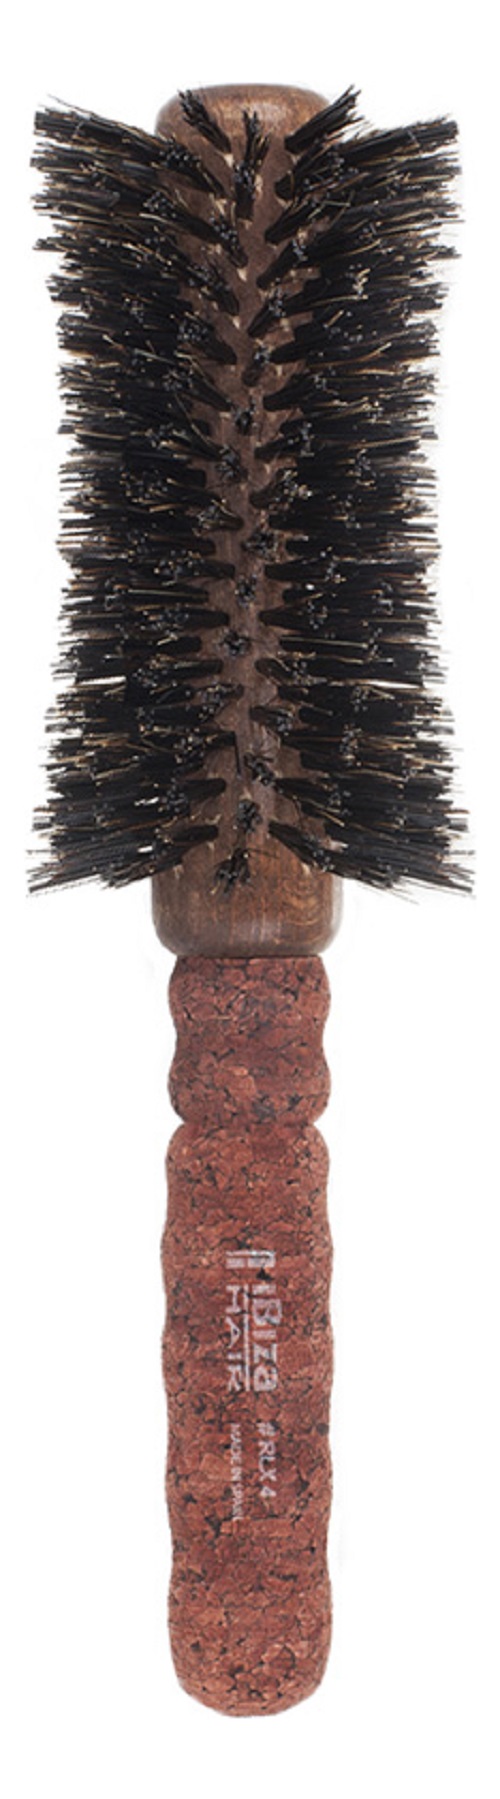 Щетка для волос Ibiza Hair RLX4 65 мм